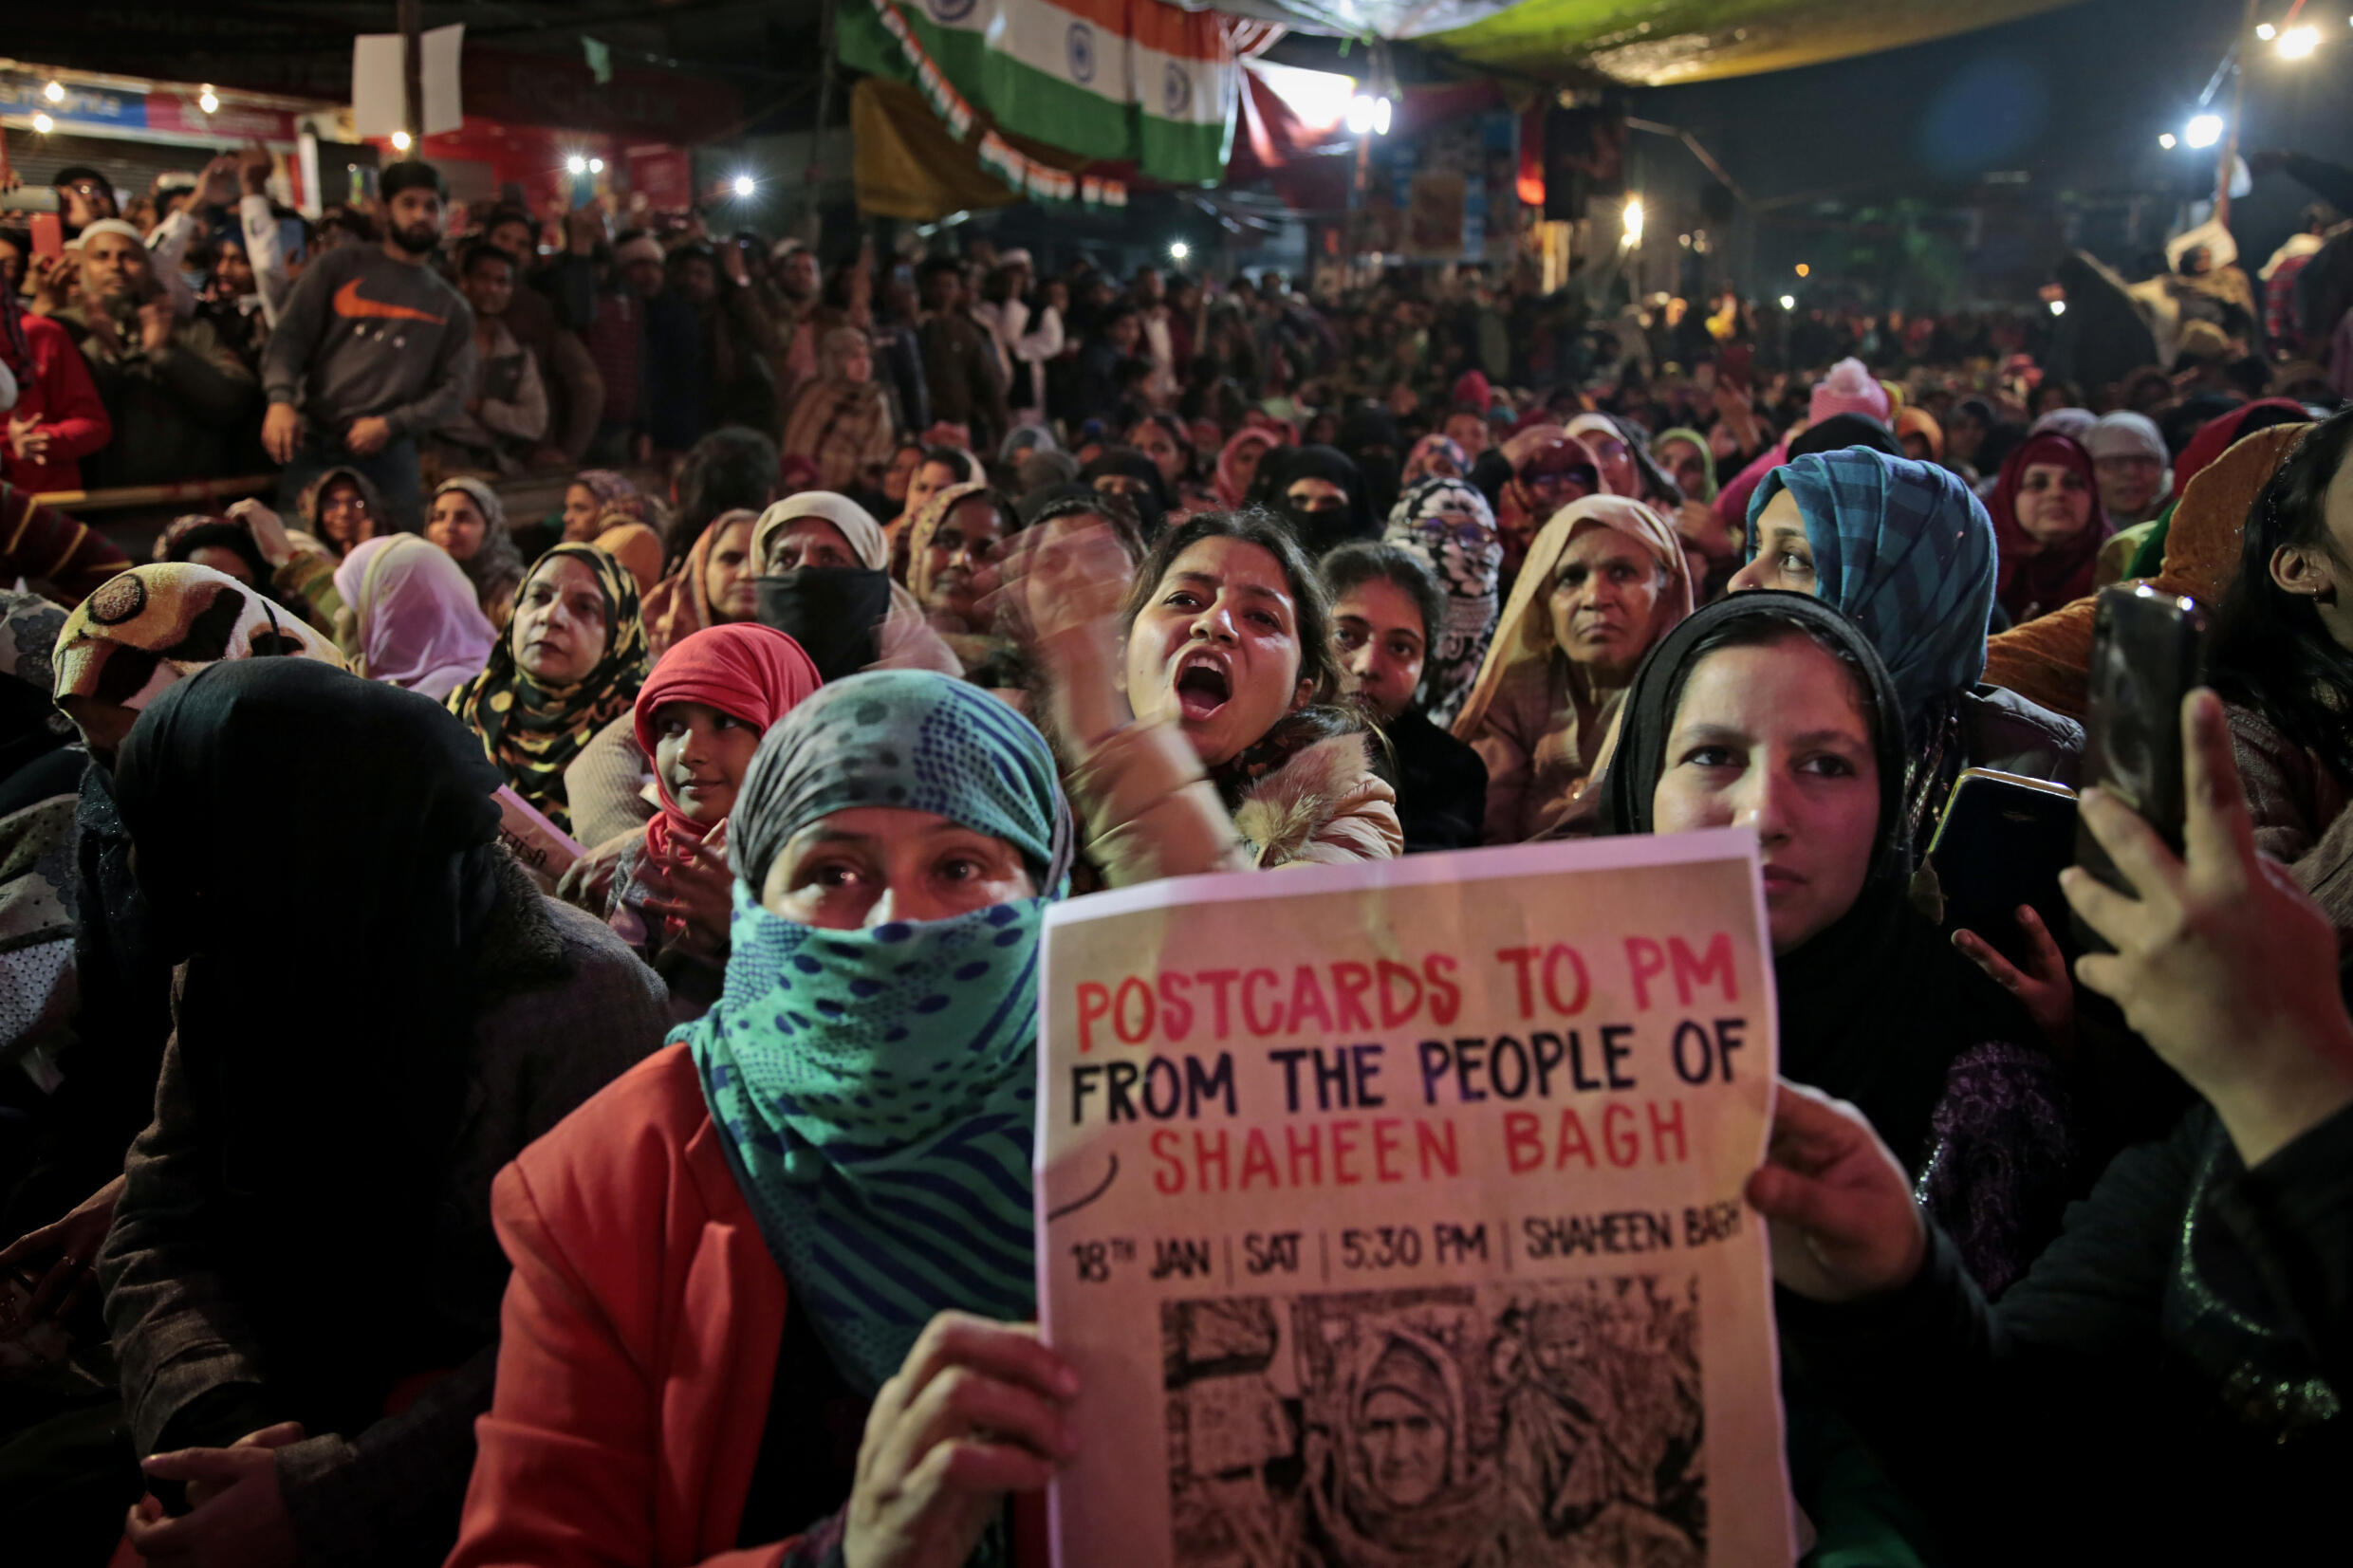 Aktenfoto von Anti-CAA-Protesten in Shaheen Bagh, Neu-Delhi, aufgenommen am 18. Januar 2020.